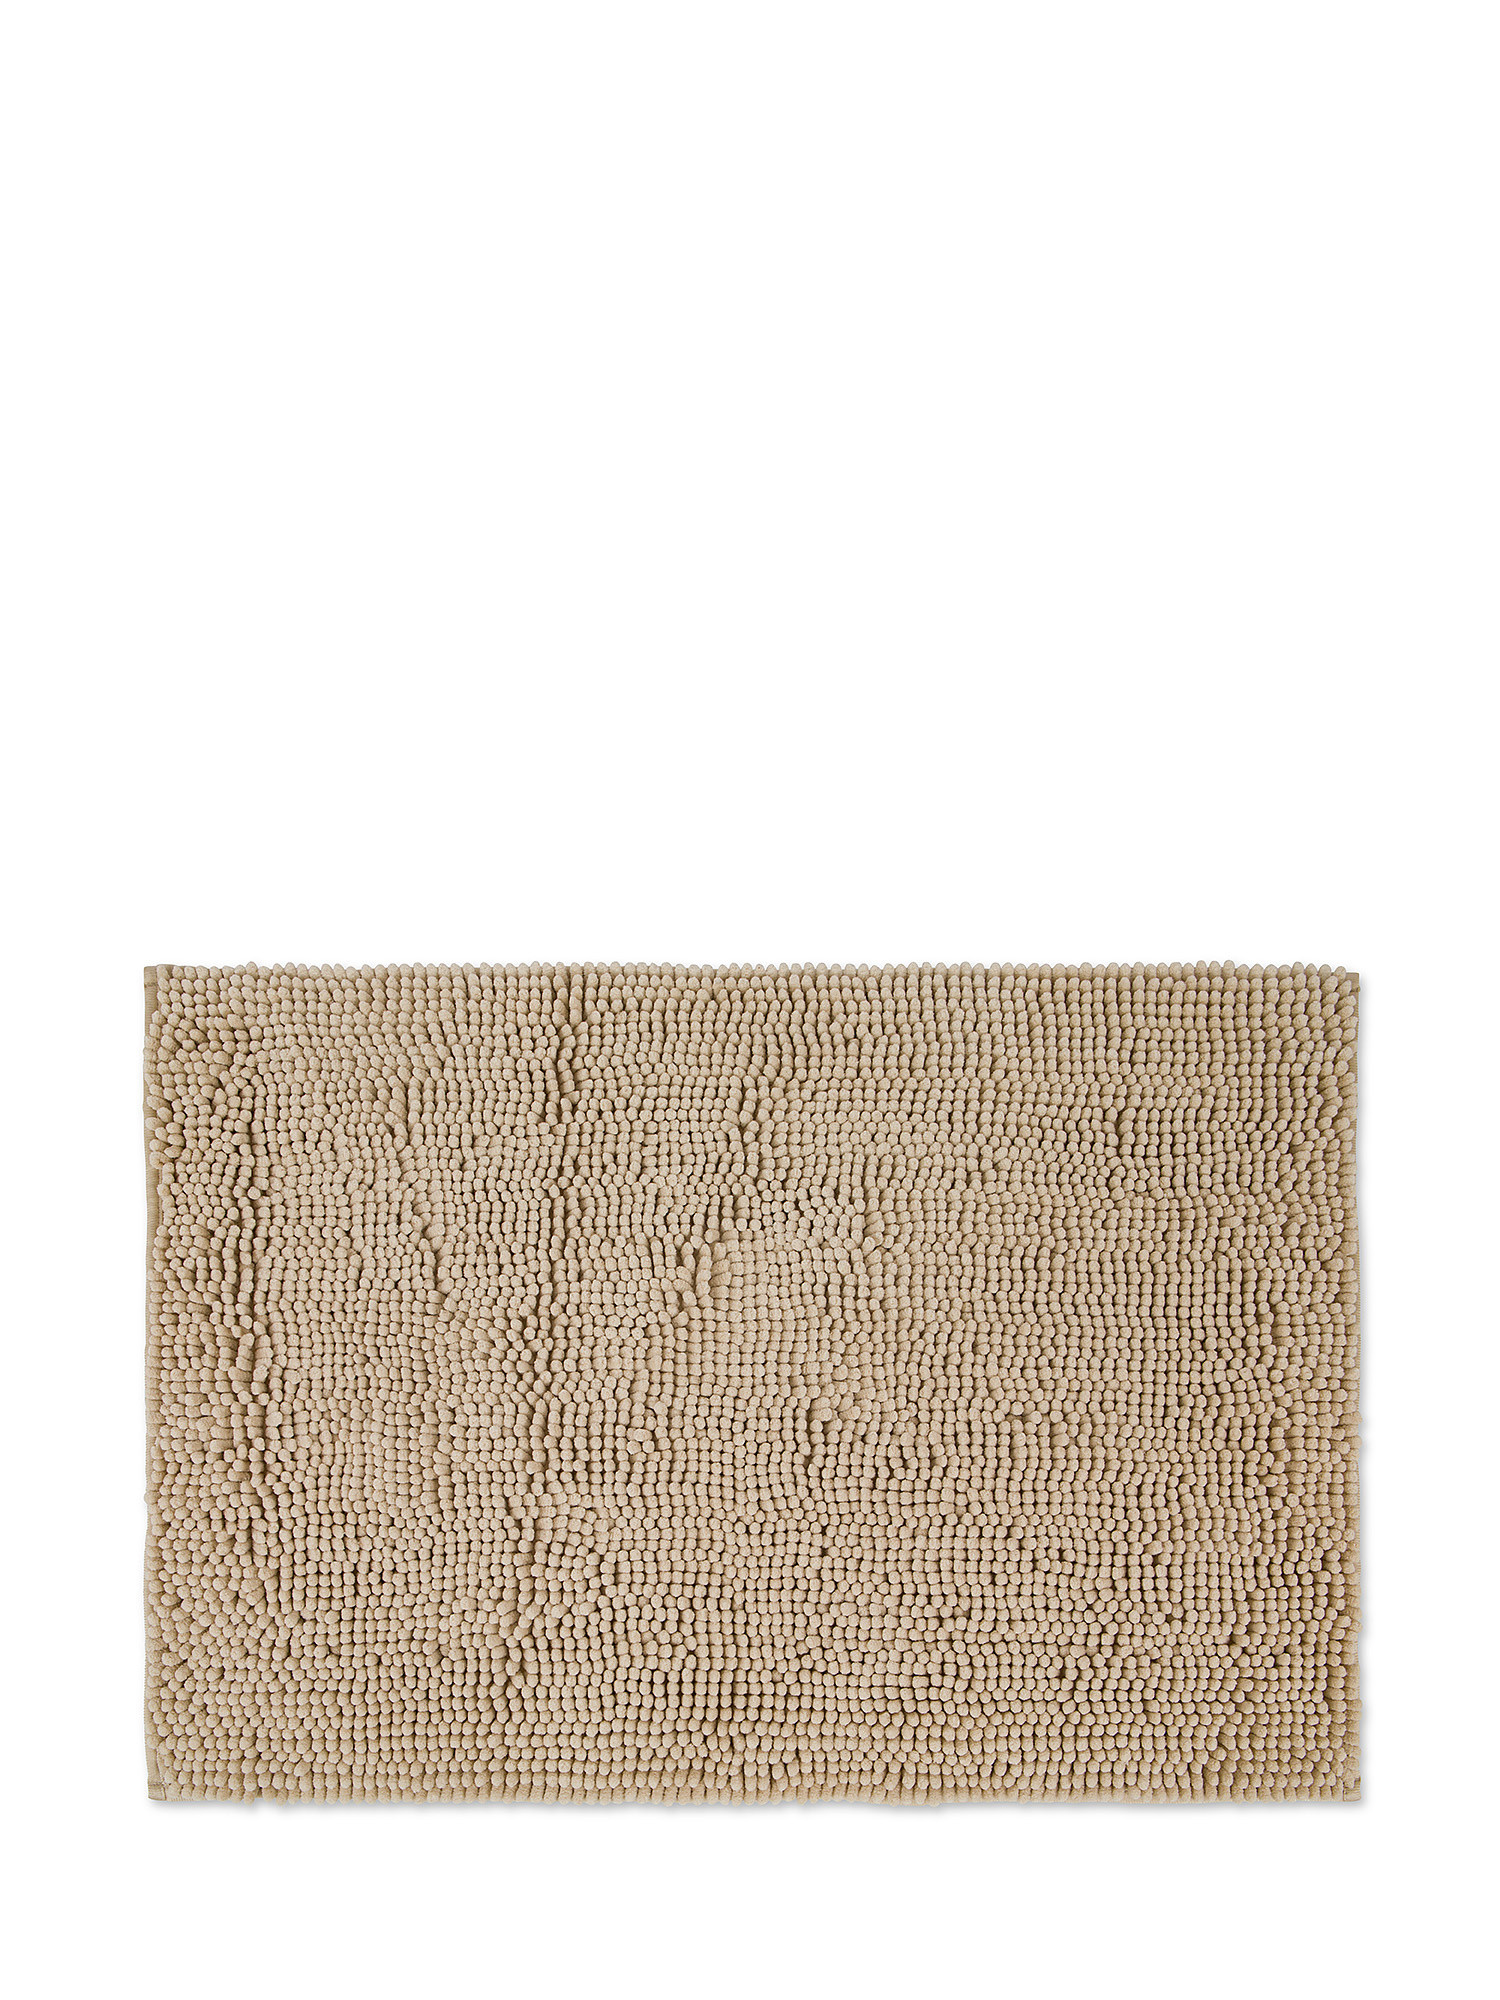 Zefiro solid color cotton bath rug, Beige, large image number 0